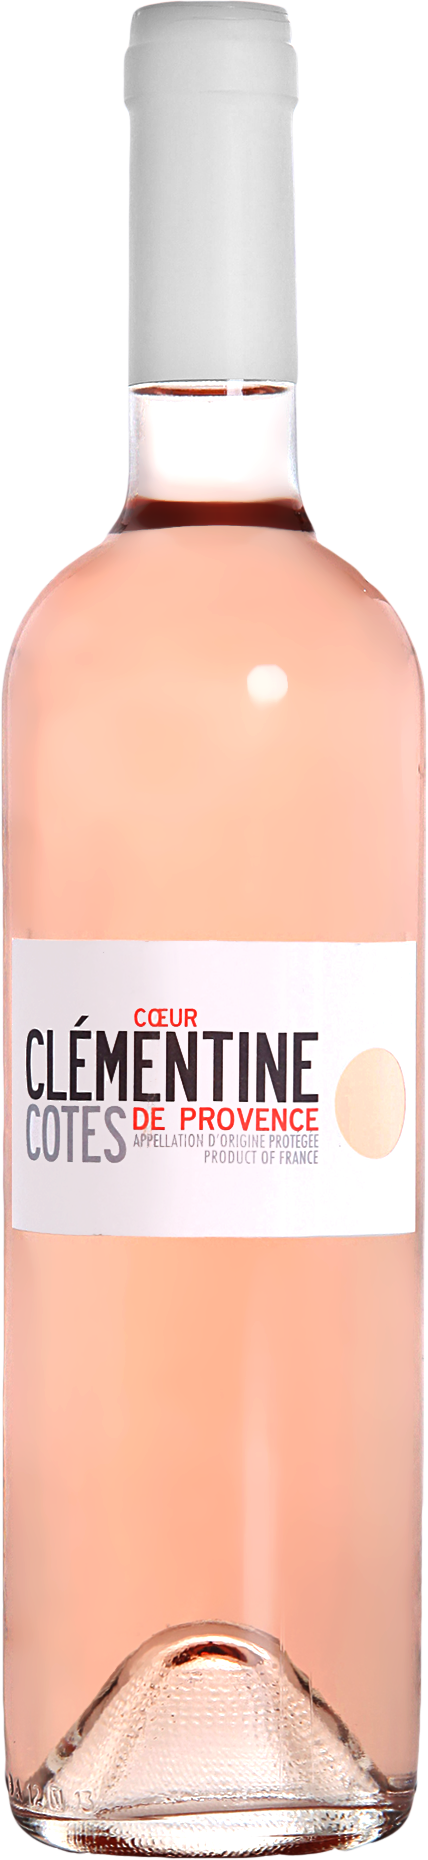 Coeur Clémentine Côtes de Provence Rosé 2019